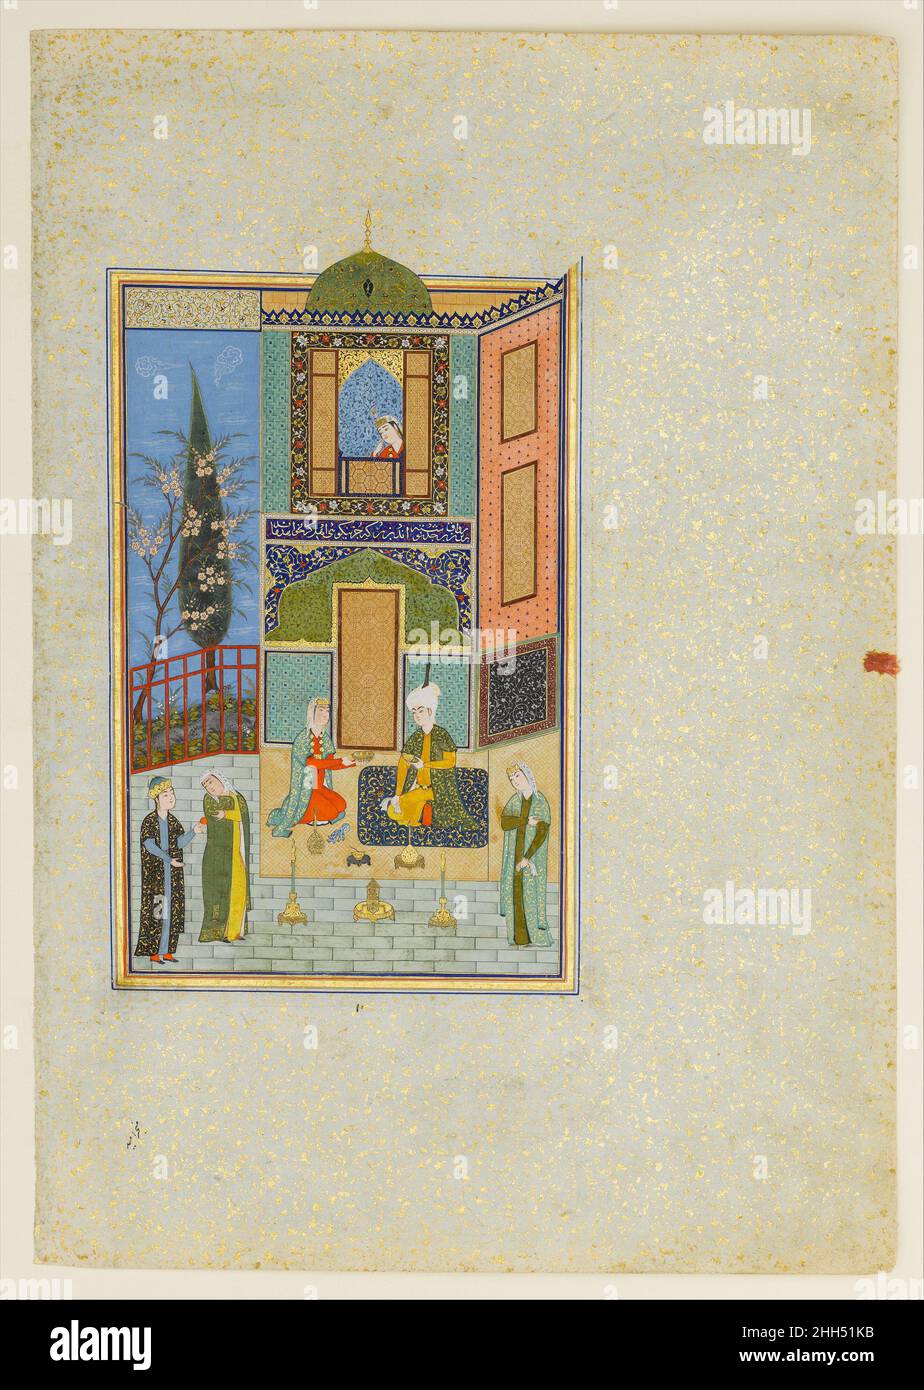 'Bahram Gur dans le Palais Vert lundi', Folio d'un Khamsa (Quintet) de Nizami A.H. 931/A.D.1524–25 Nizami le Haft Paikar (sept Portraits) est l'un des cinq poèmes de la Khamsa de Nizami.La poésie est mystique, illustrant la suprématie de l'amour divin sur les plaisirs terrestres.Dans l'histoire, Bahram Gur épouse sept princesses des sept régions du monde et visite chacune d'elles dans son propre pavillon les nuits successives.Ici, lui et la princesse de Khorezm sont assis dans le pavillon du jardin du palais vert.Les objets environnants offrent un aperçu des biens de luxe du comte Banque D'Images